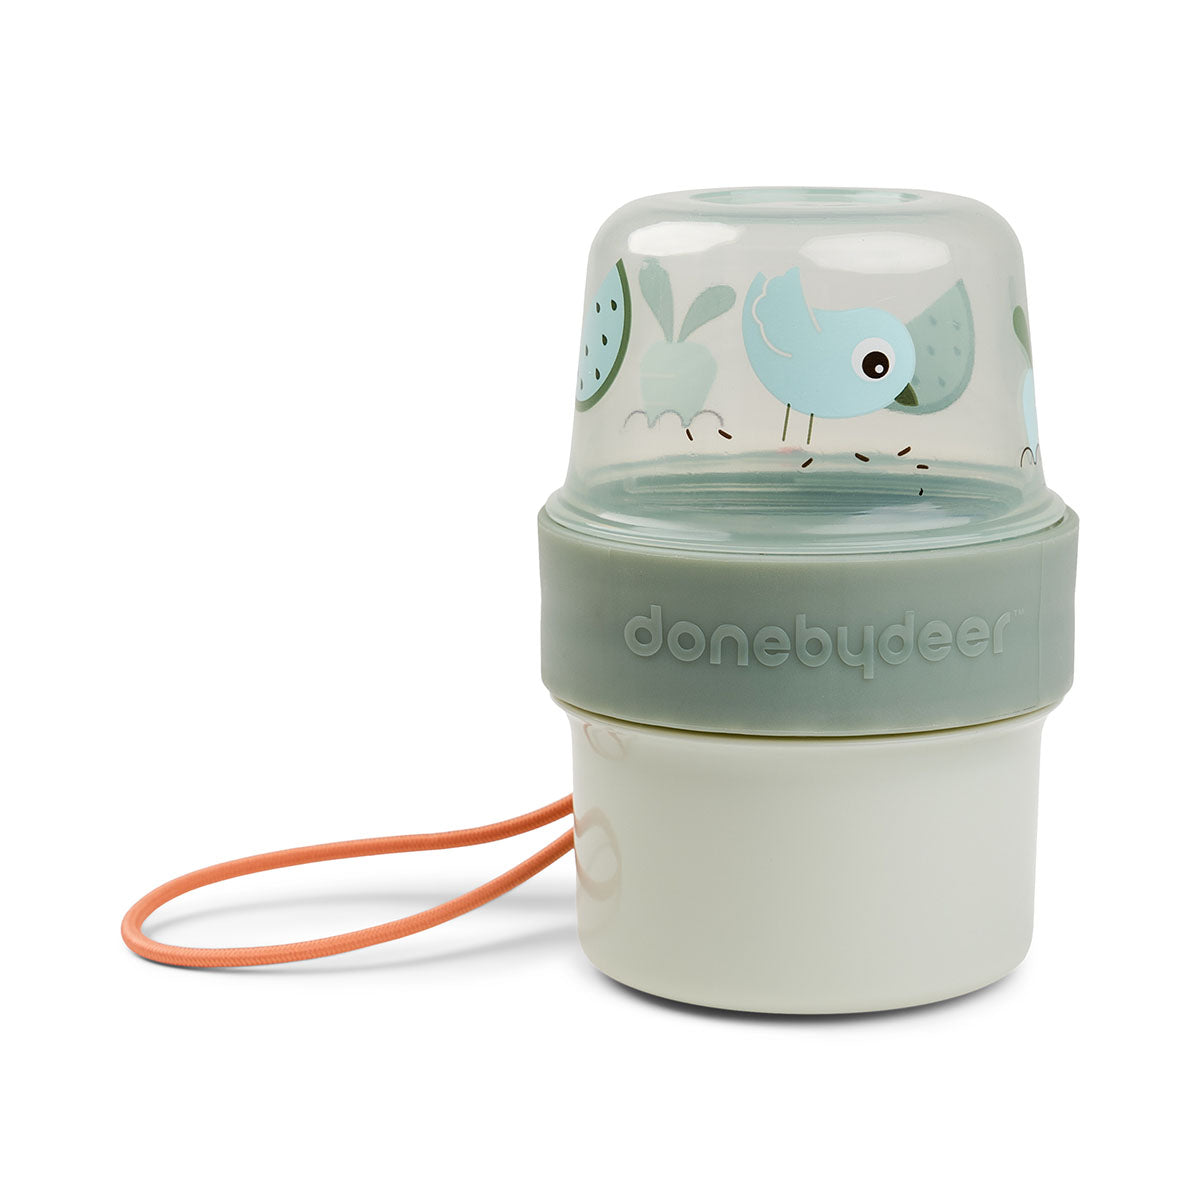 Produktbild: Birdee to-go Snack Container S von donebydeer im Onlineshop von dasMikruli - Dein Shop für Baby Erstausstattung